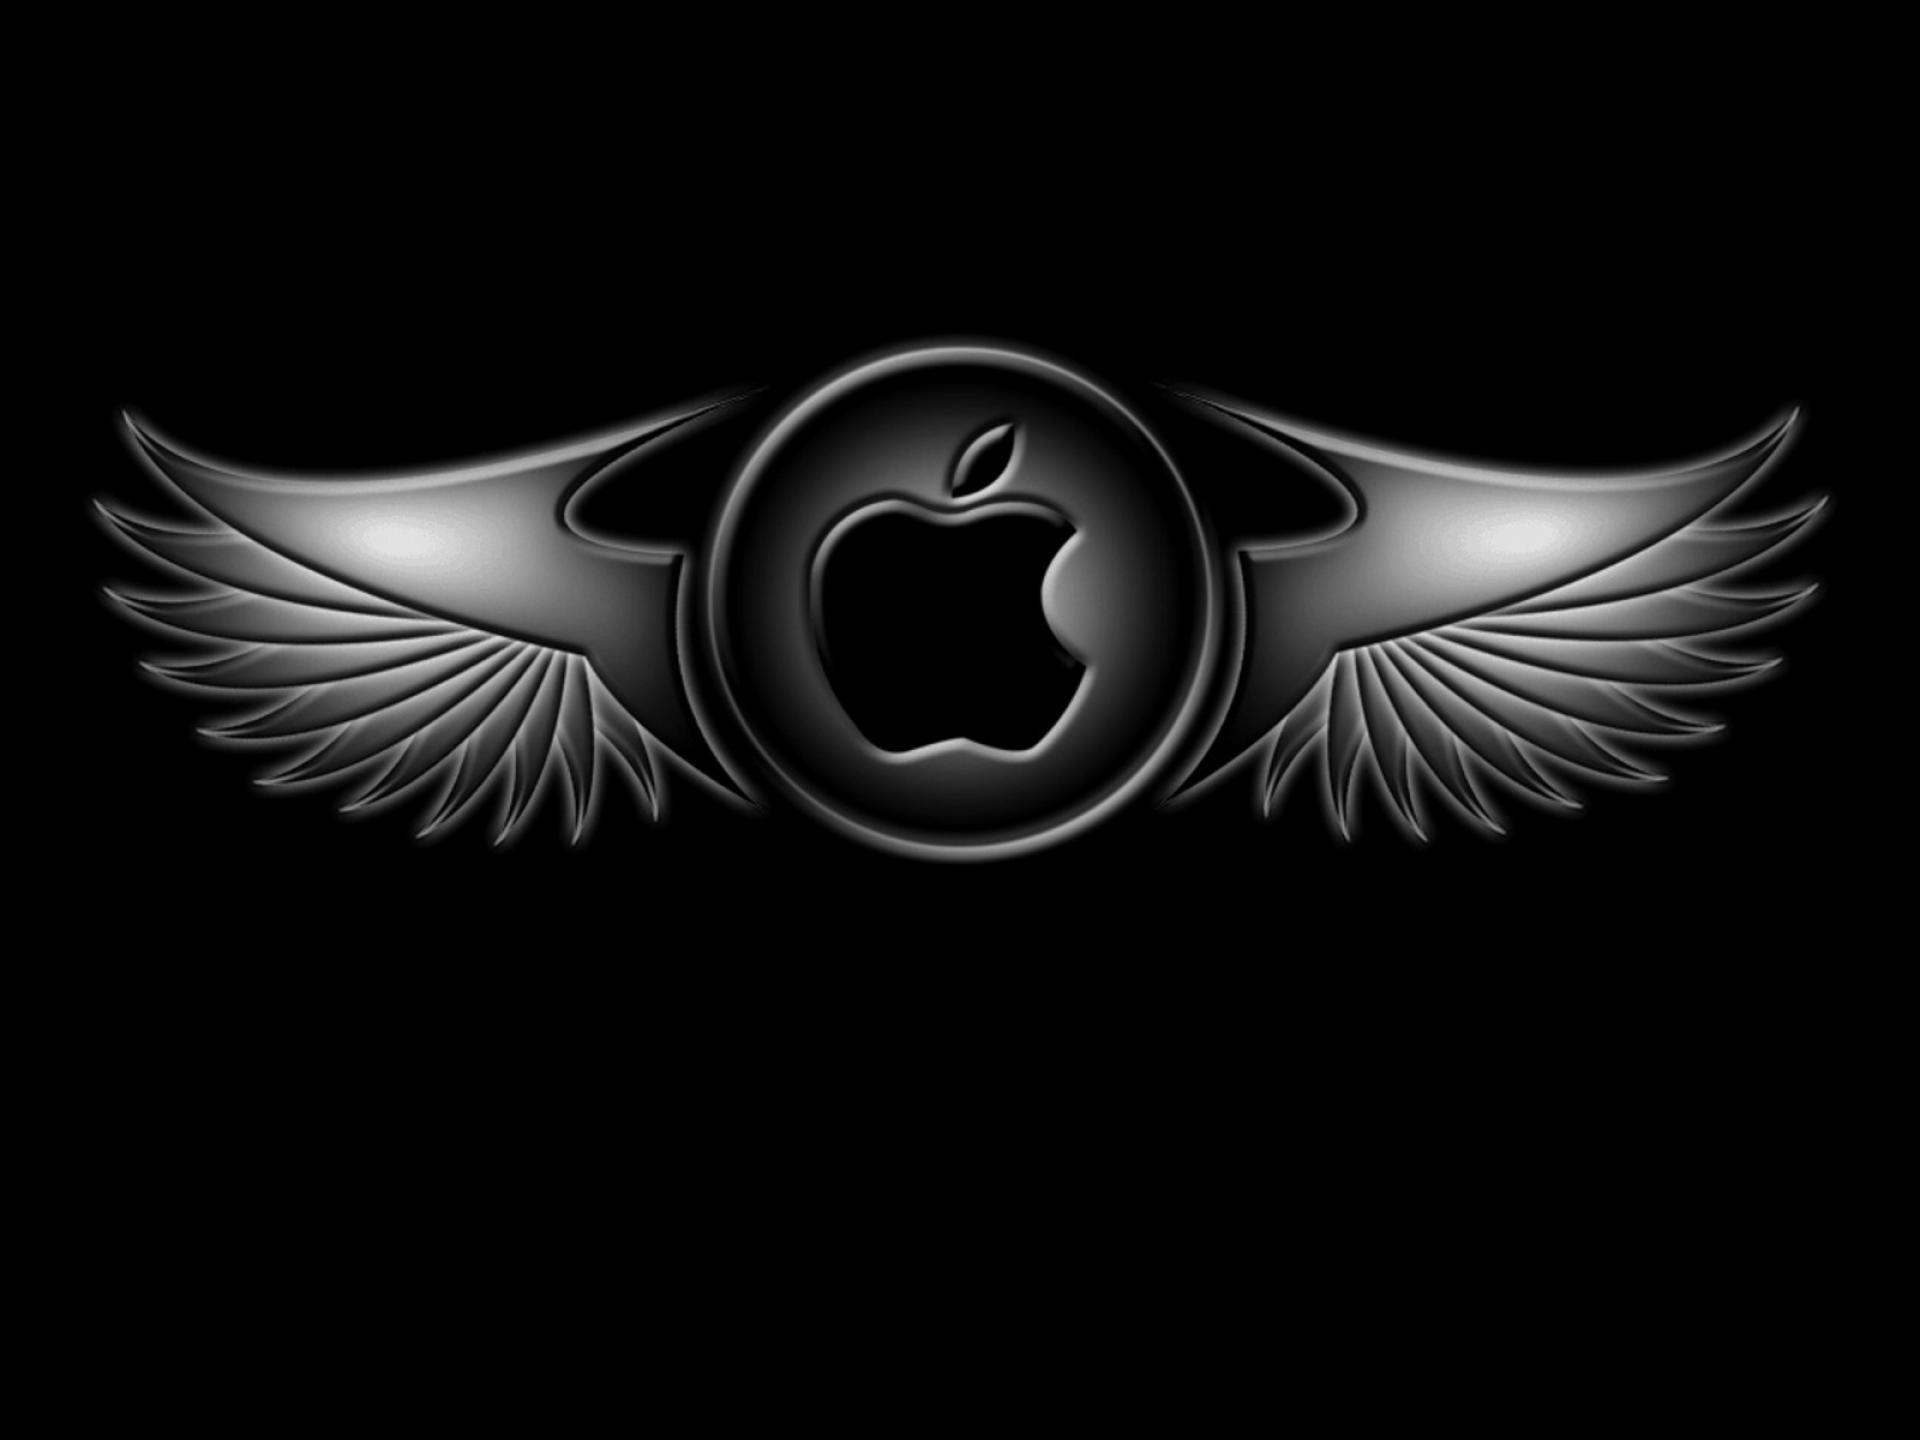 fond d'écran apple hd,aile,emblème,ténèbres,symbole,noir et blanc